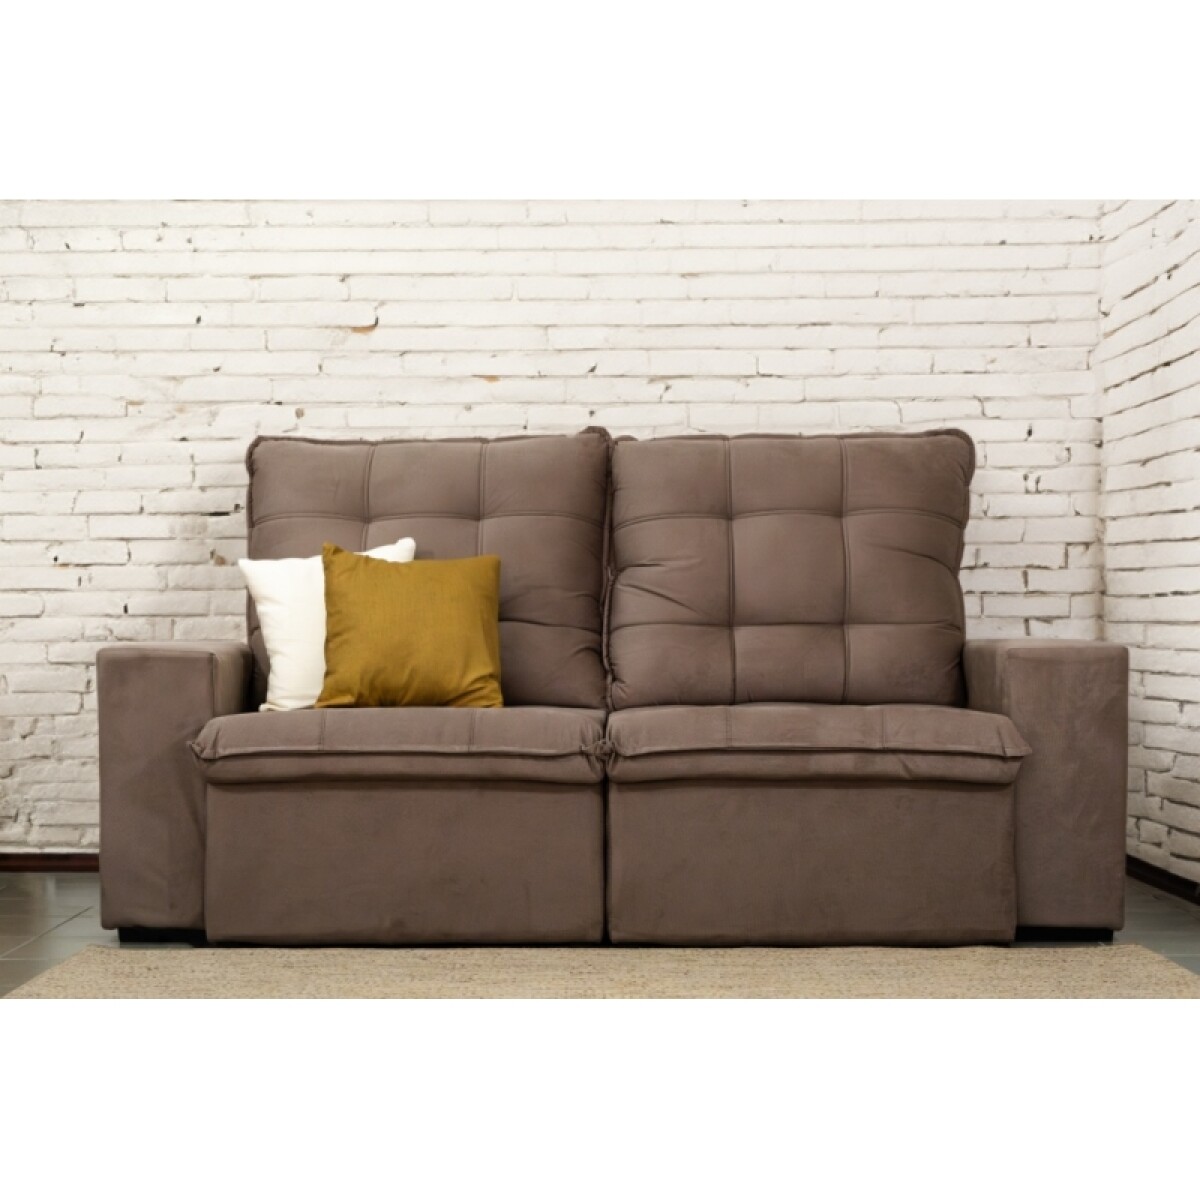 Sofa 3 Cuerpos Magnum Retractil Reclinable 